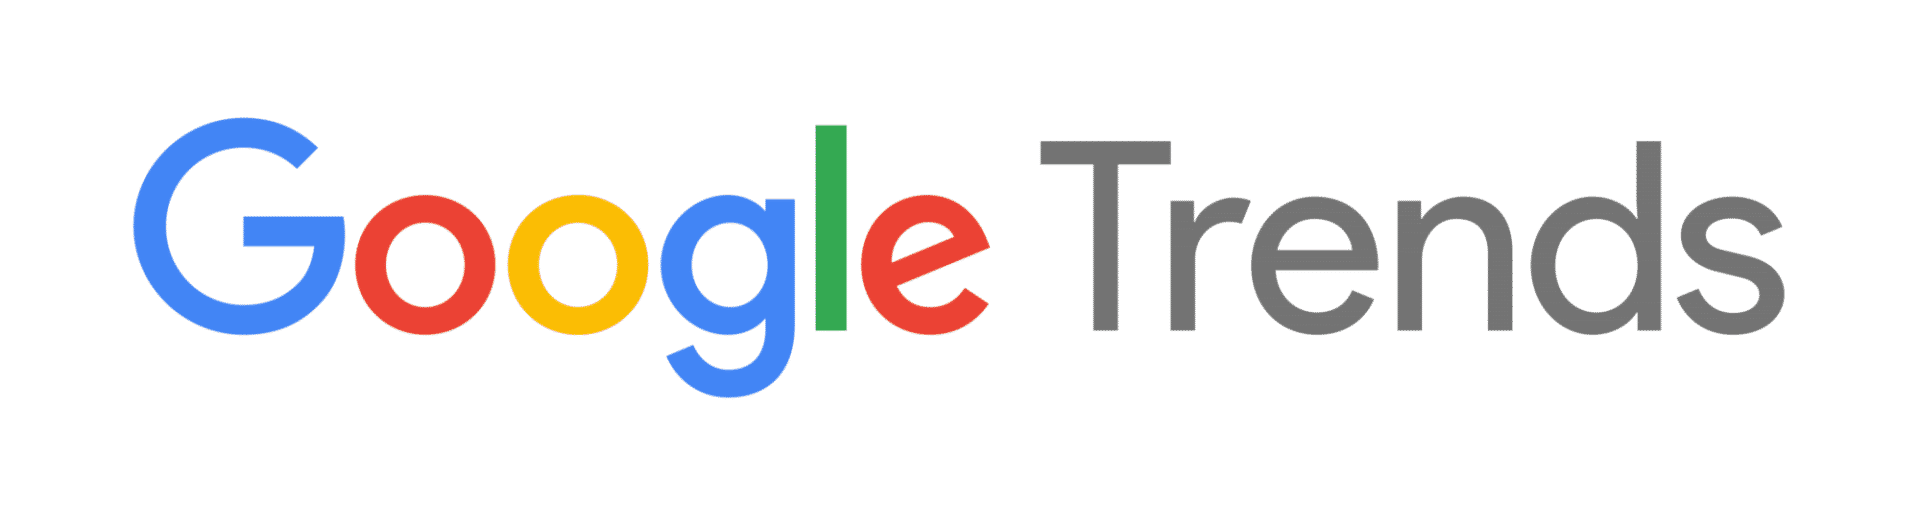 Google trends logo 1 | aio création